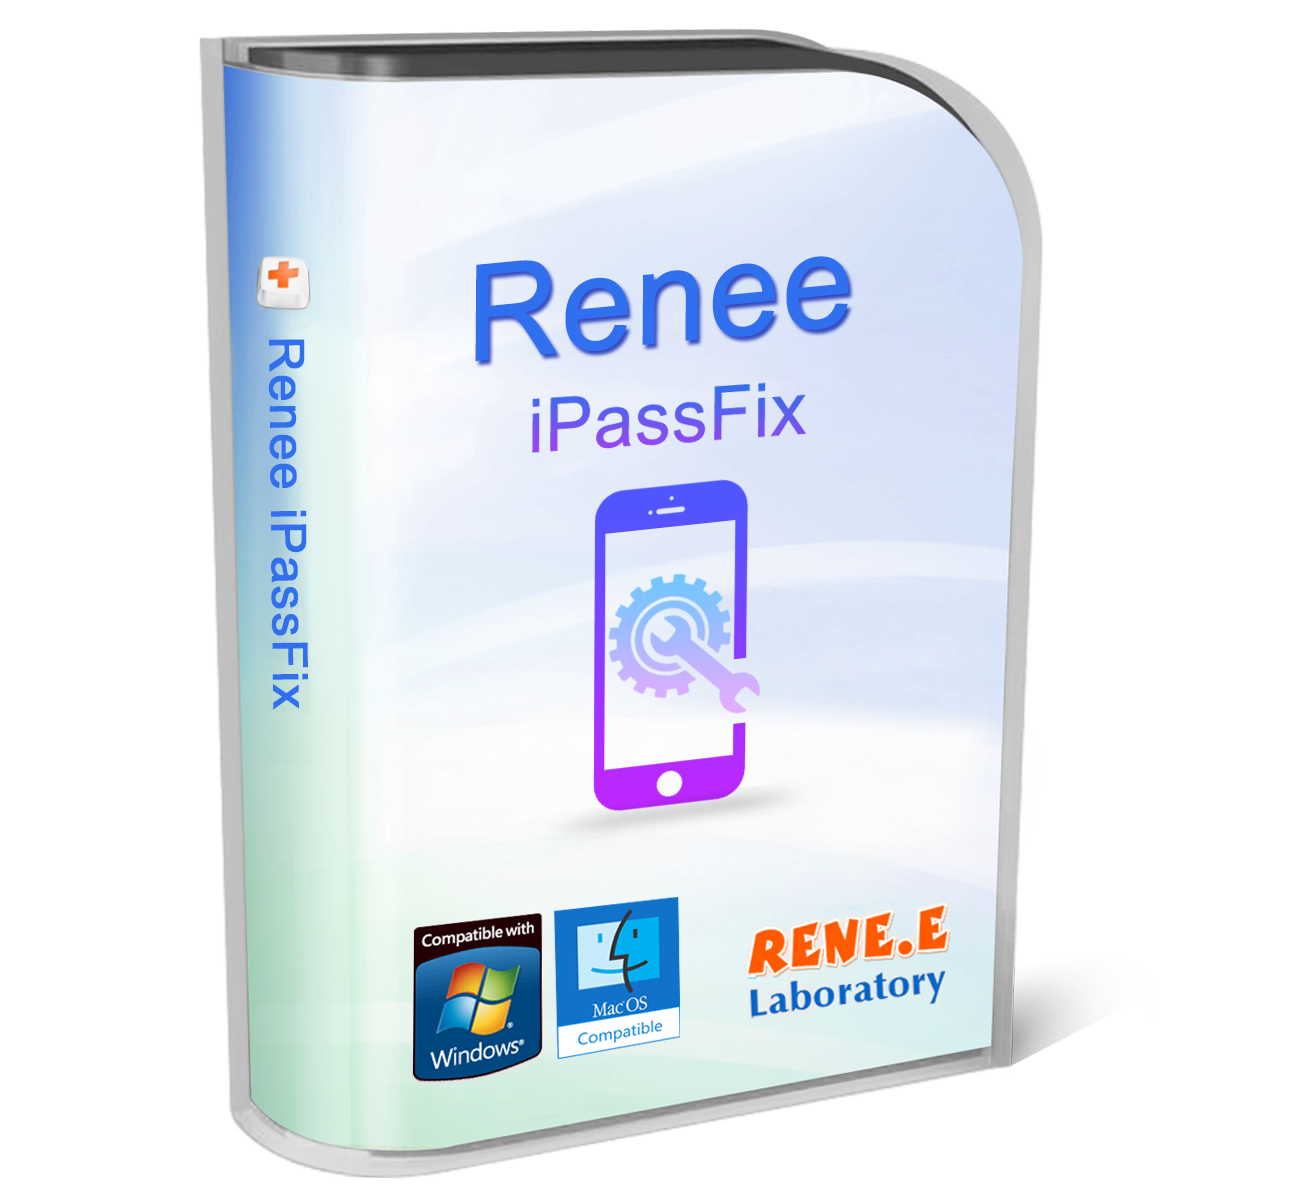  renee ipassfix software package